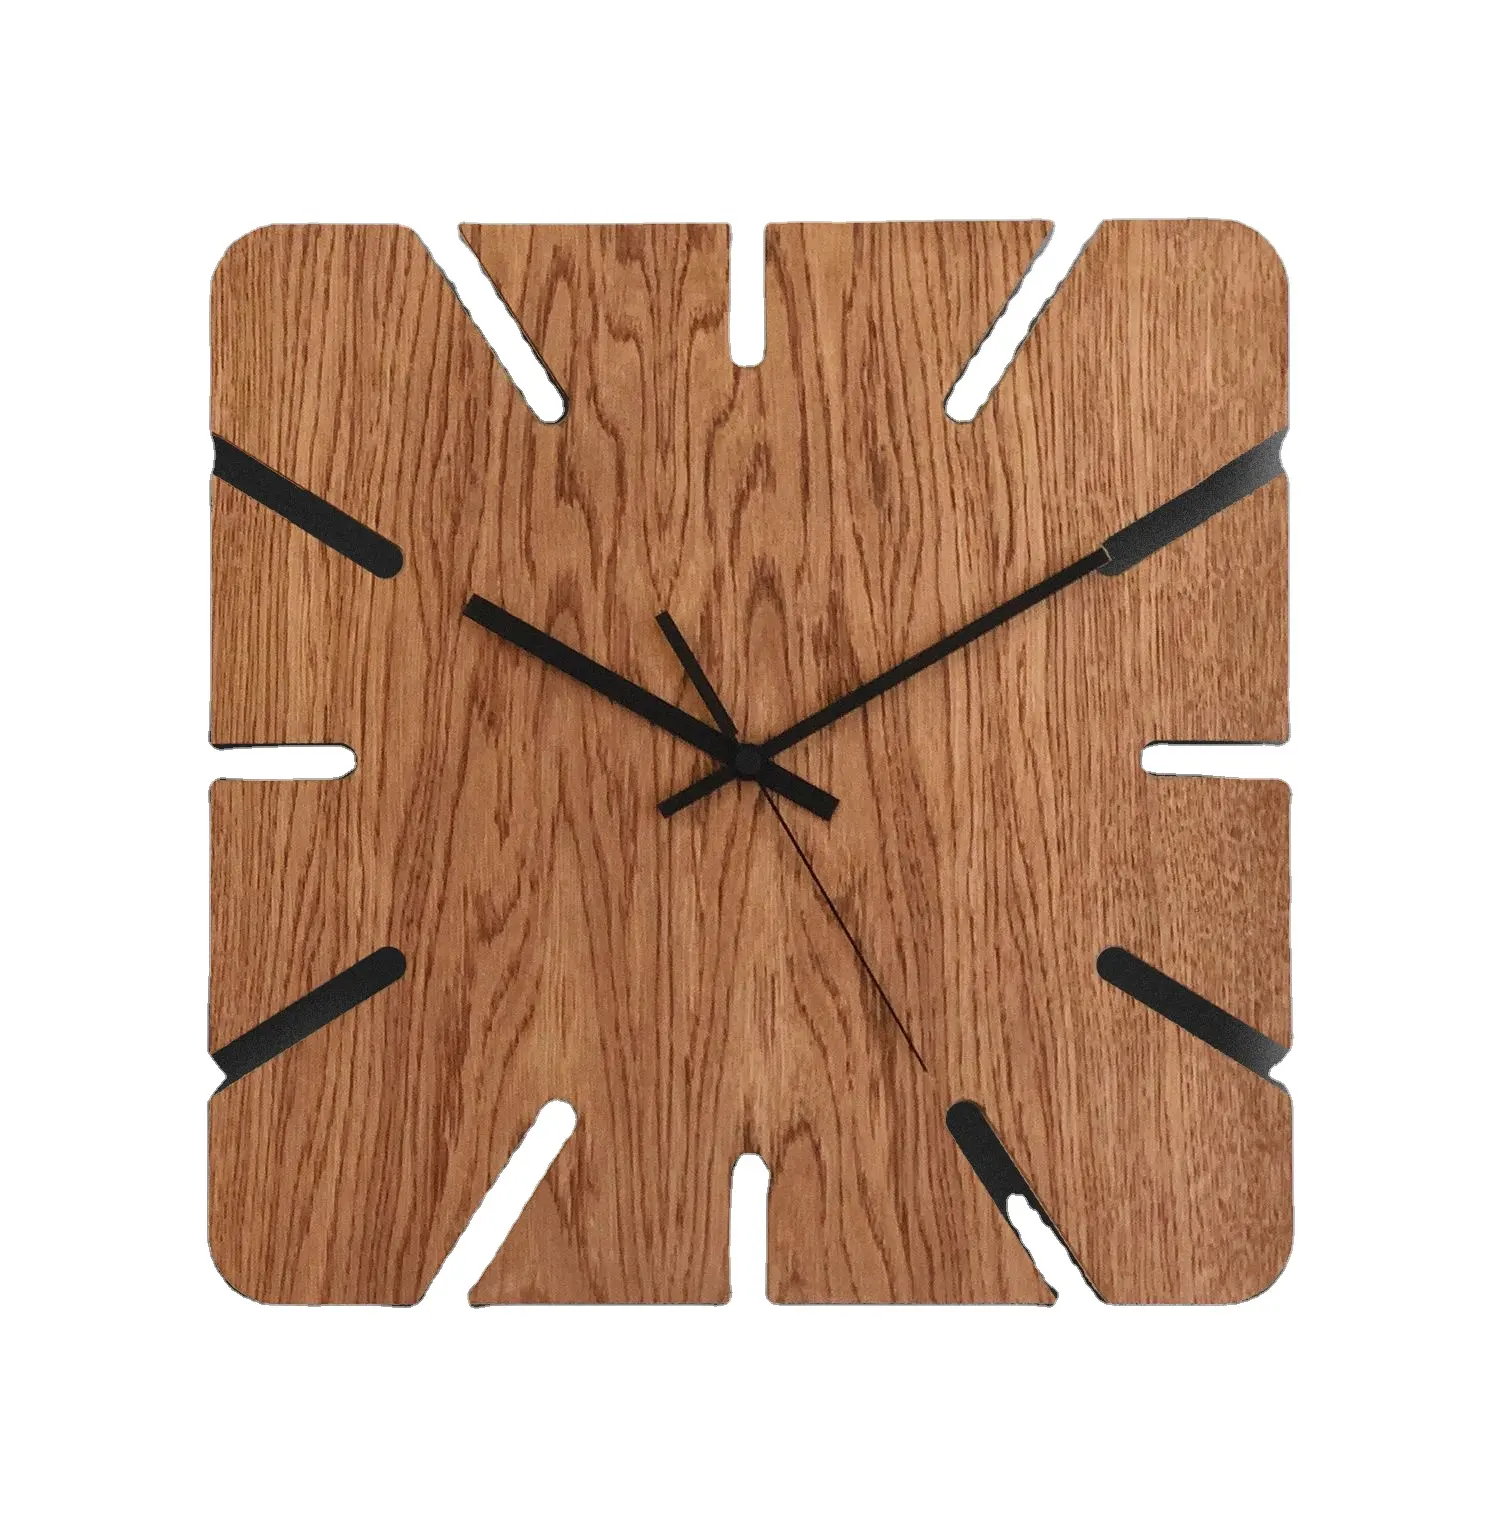 นาฬิกาแขวนผนังไม้ทรงเหลี่ยม,นาฬิกาขัดธรรมชาติงานทำมือคุณภาพสูงสำหรับใช้ตกแต่งภายใน